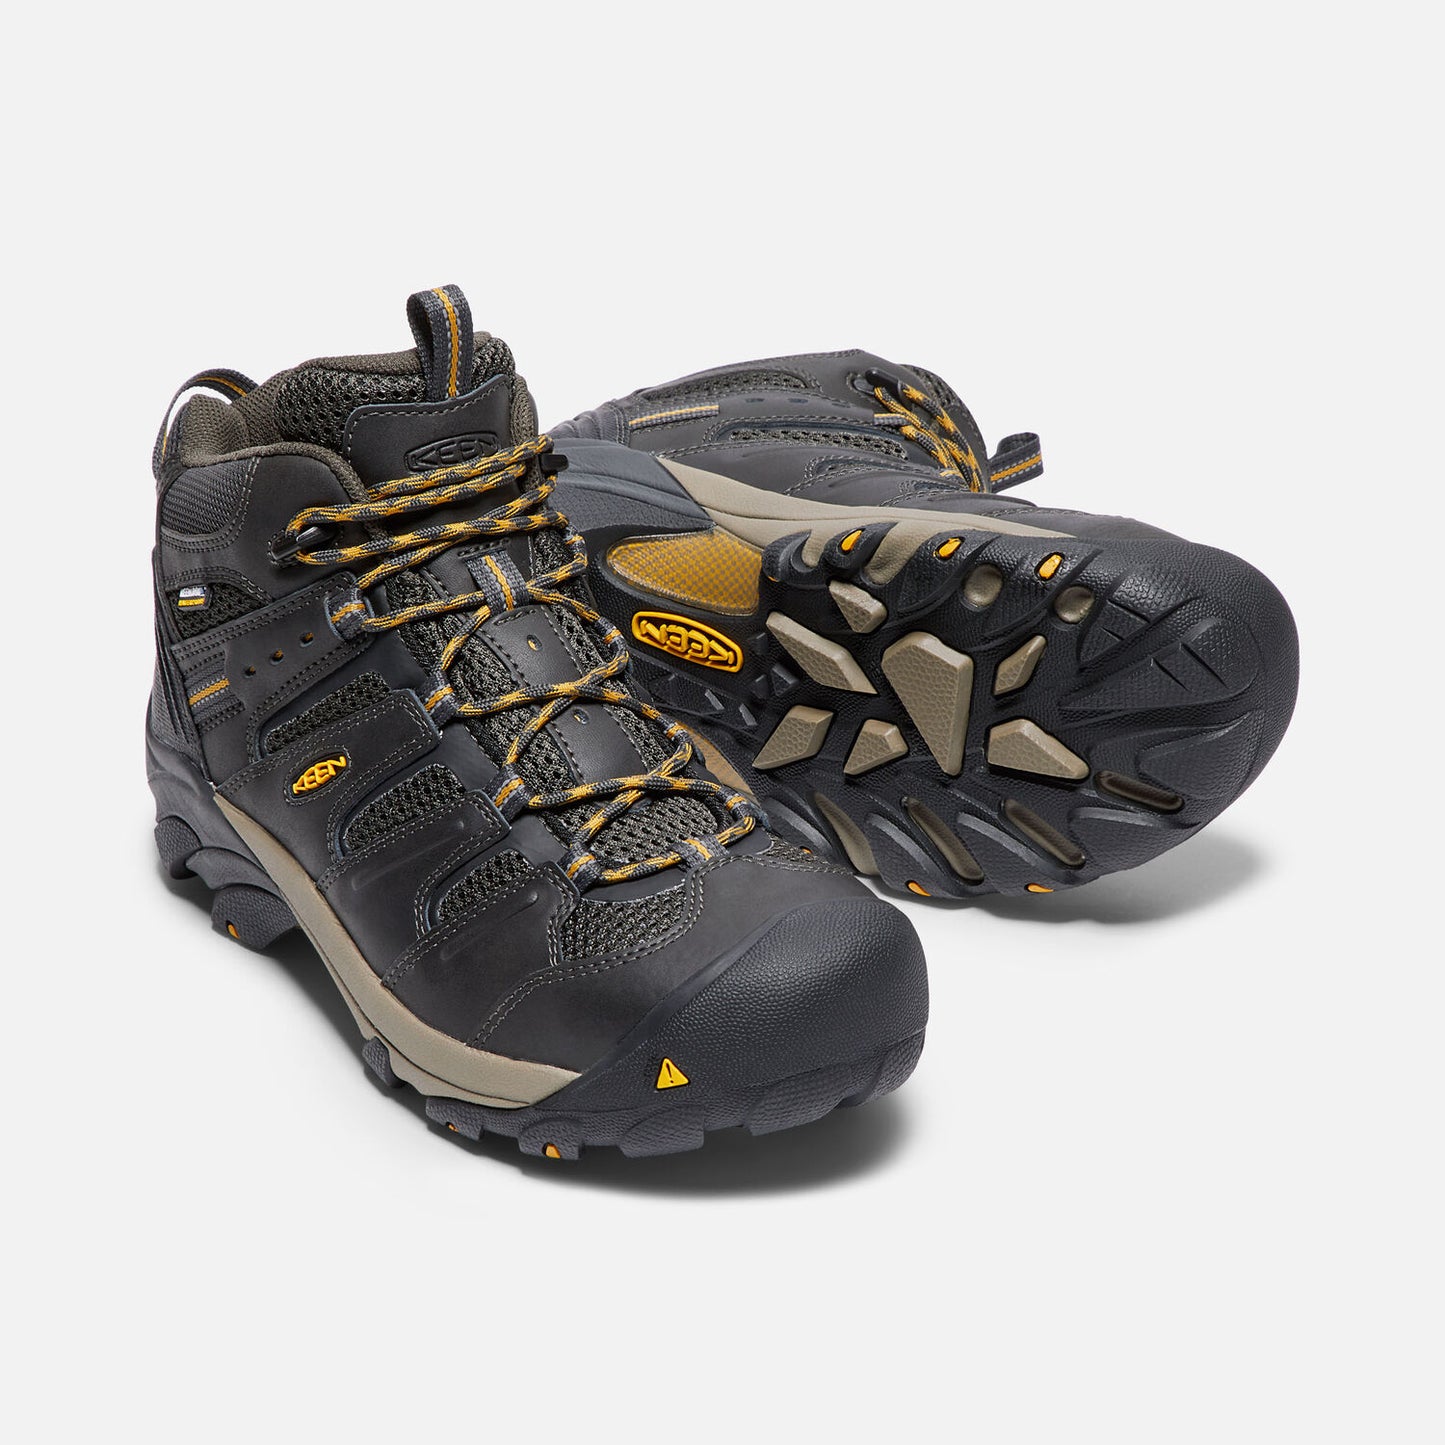 Keen Utility Men's Lansing Steel Toe Waterproof Boots - Raven/ Tawny Olive